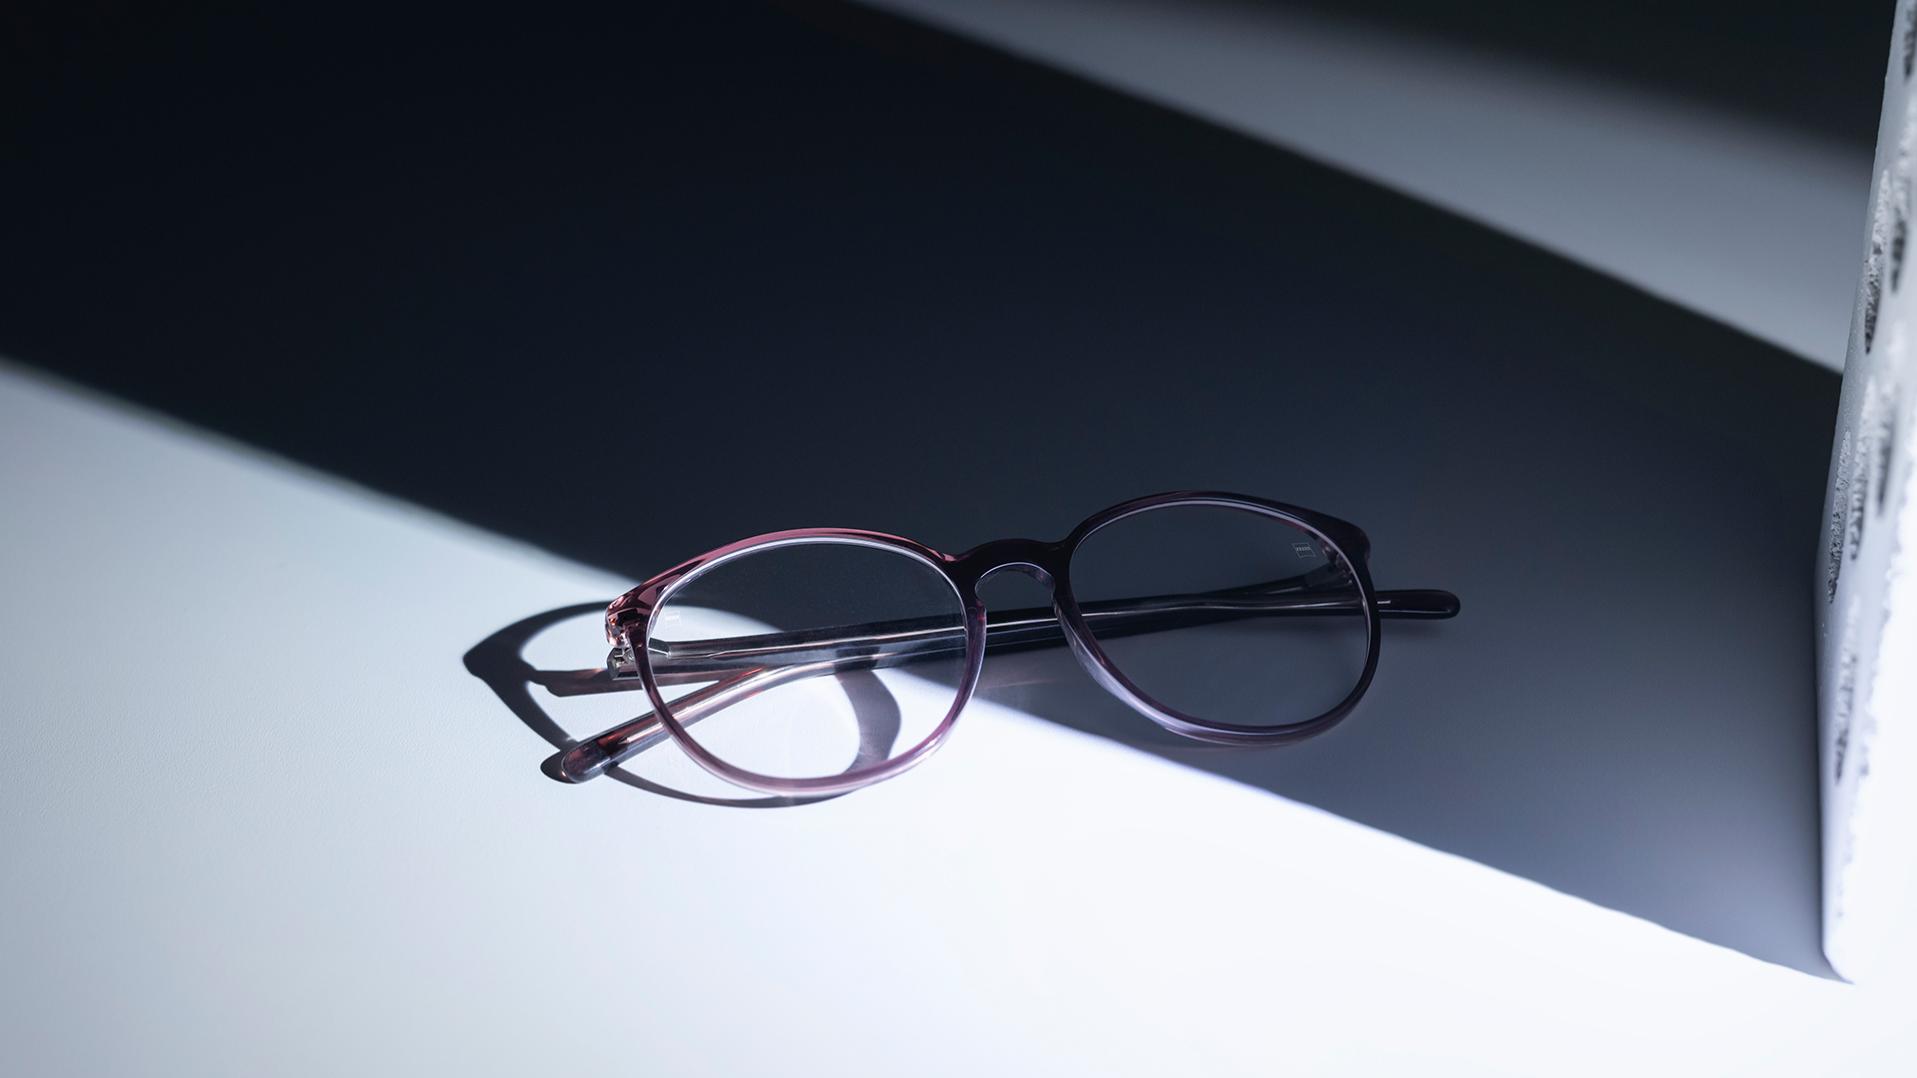 Óculos com lentes ZEISS e tratamentos DuraVision®, metade na sombra e metade no sol.